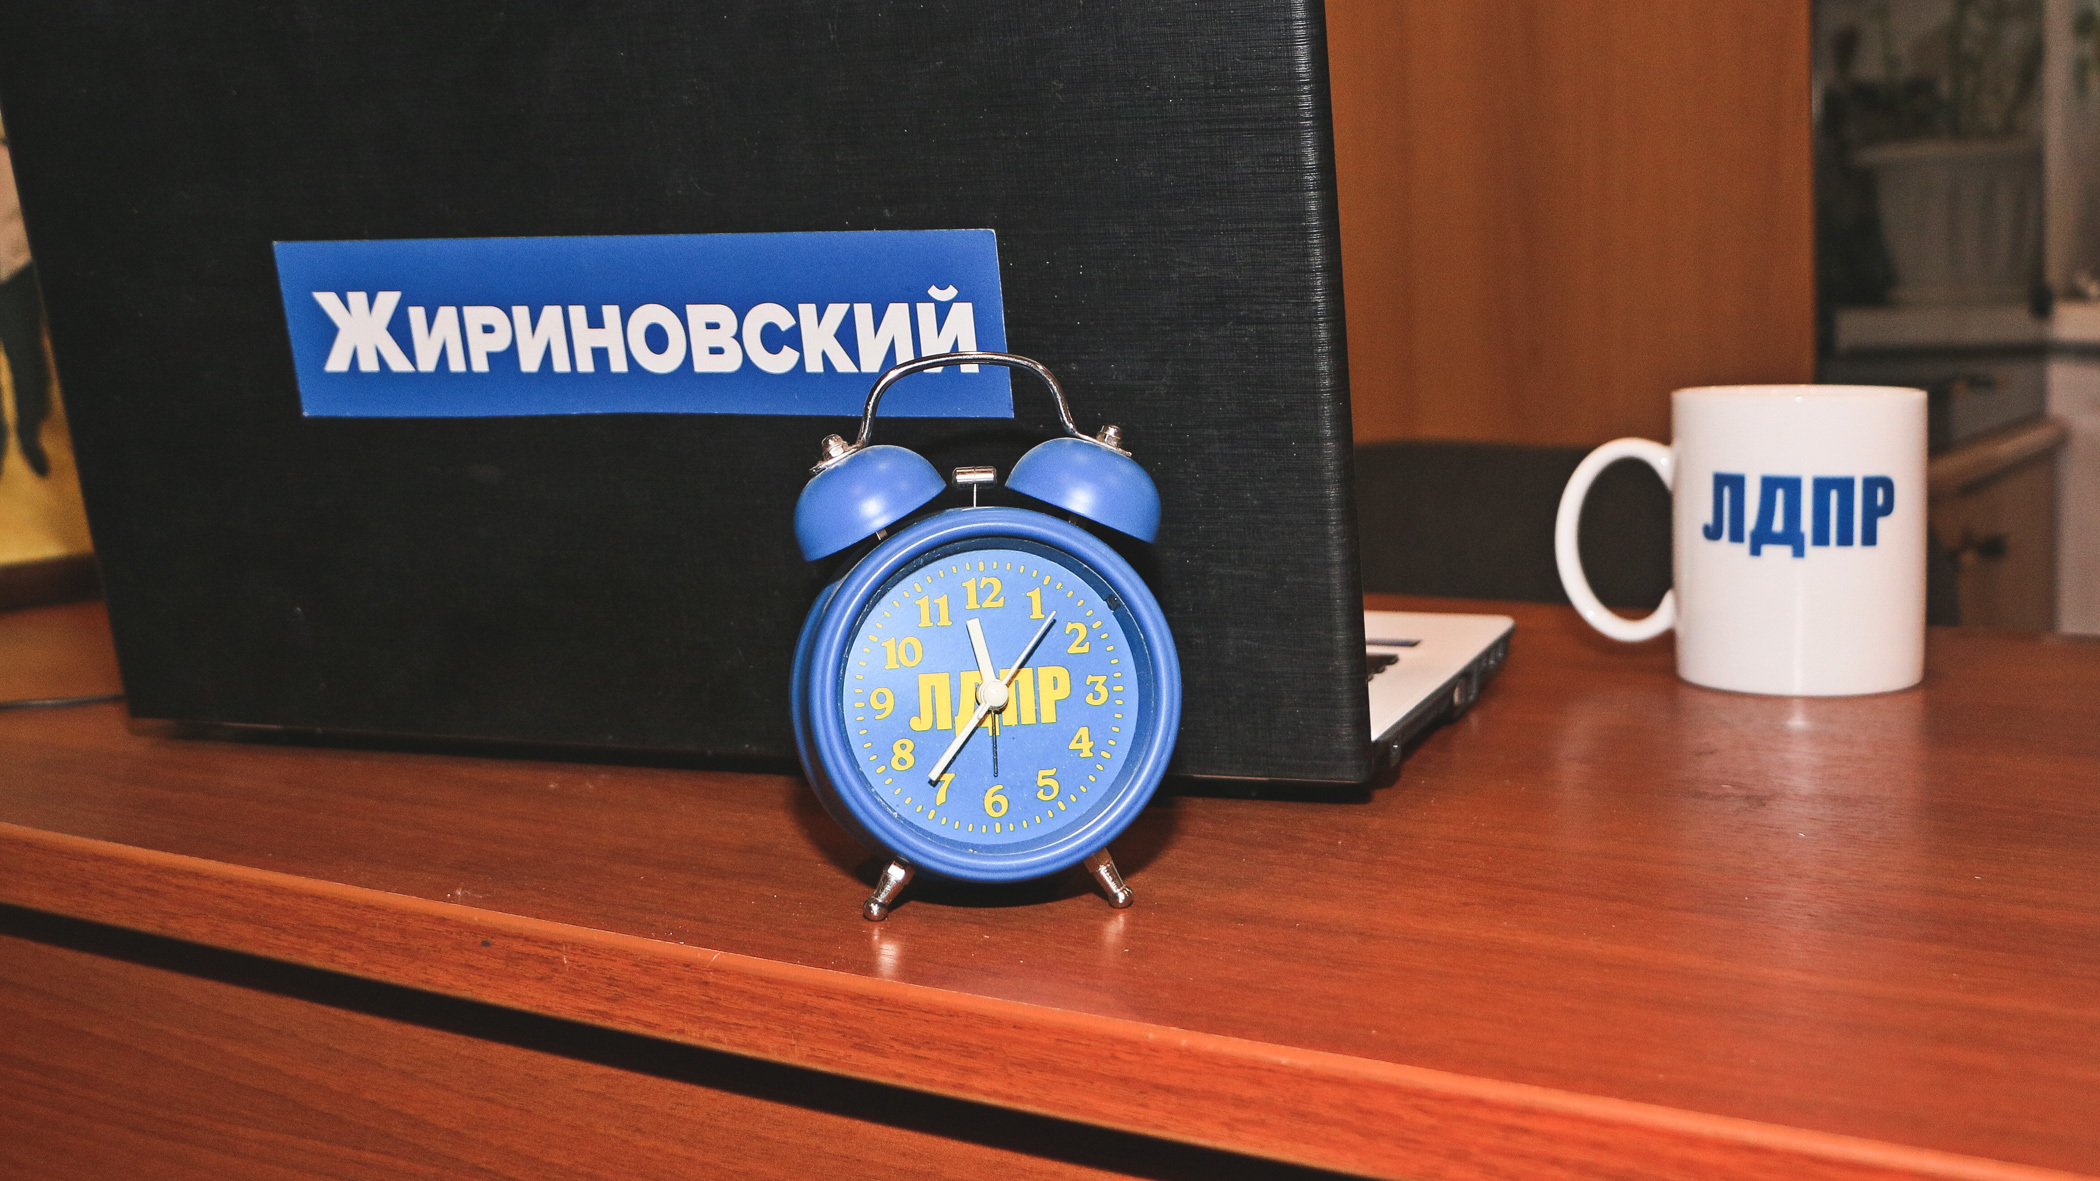 Владимир Жириновский снял свою кандидатуру в пользу молодого депутата из Тюмени